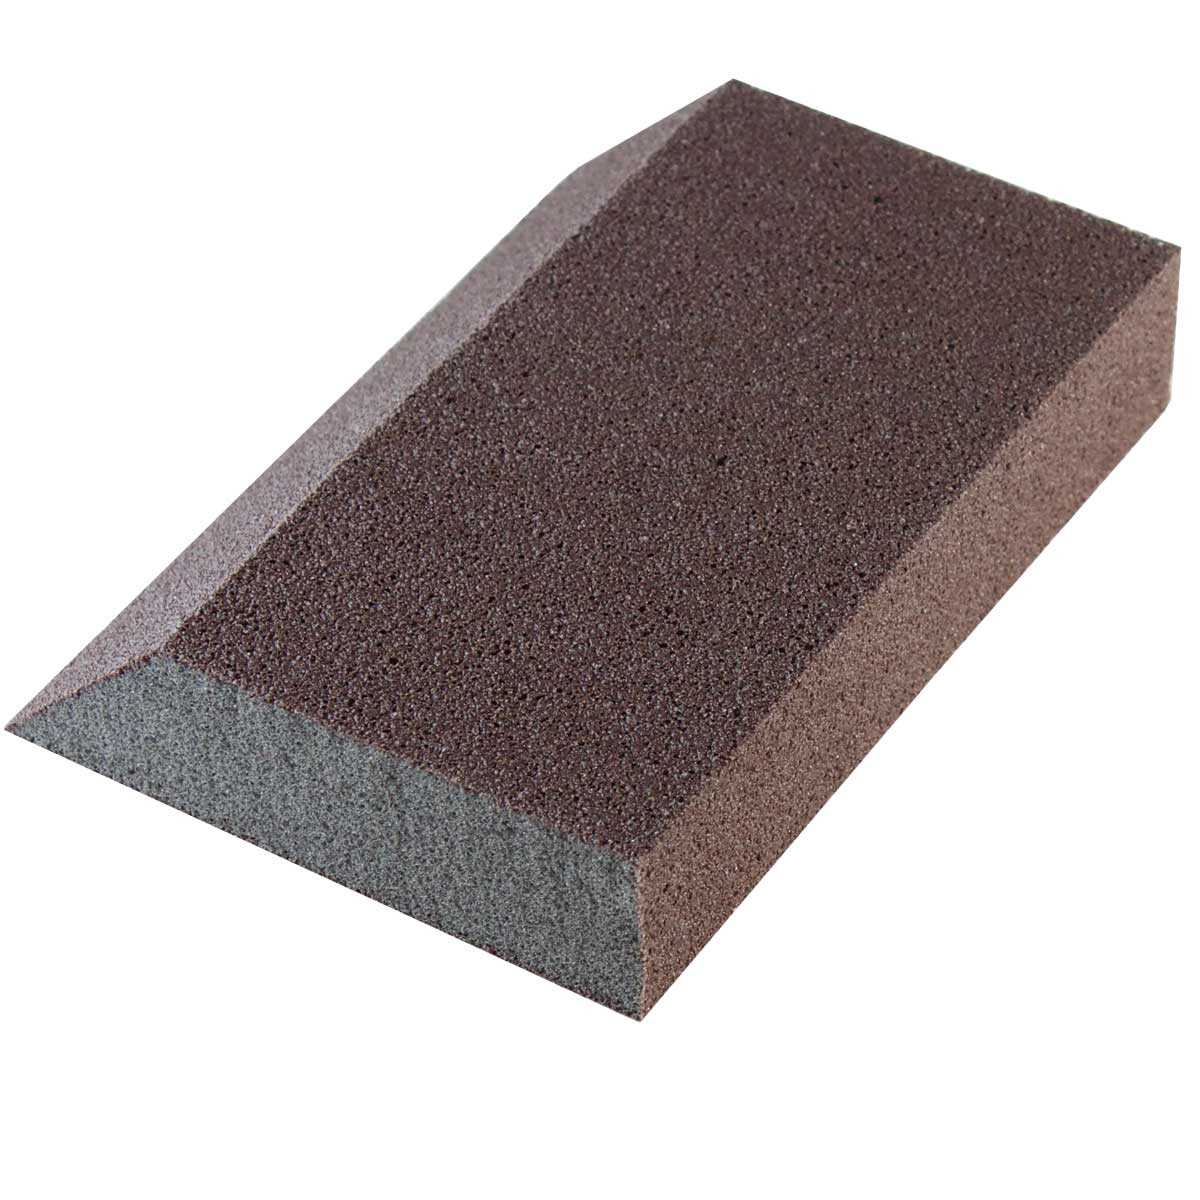 Grit Sanding Sponge Drywall  Best Sanding Sponge Drywall